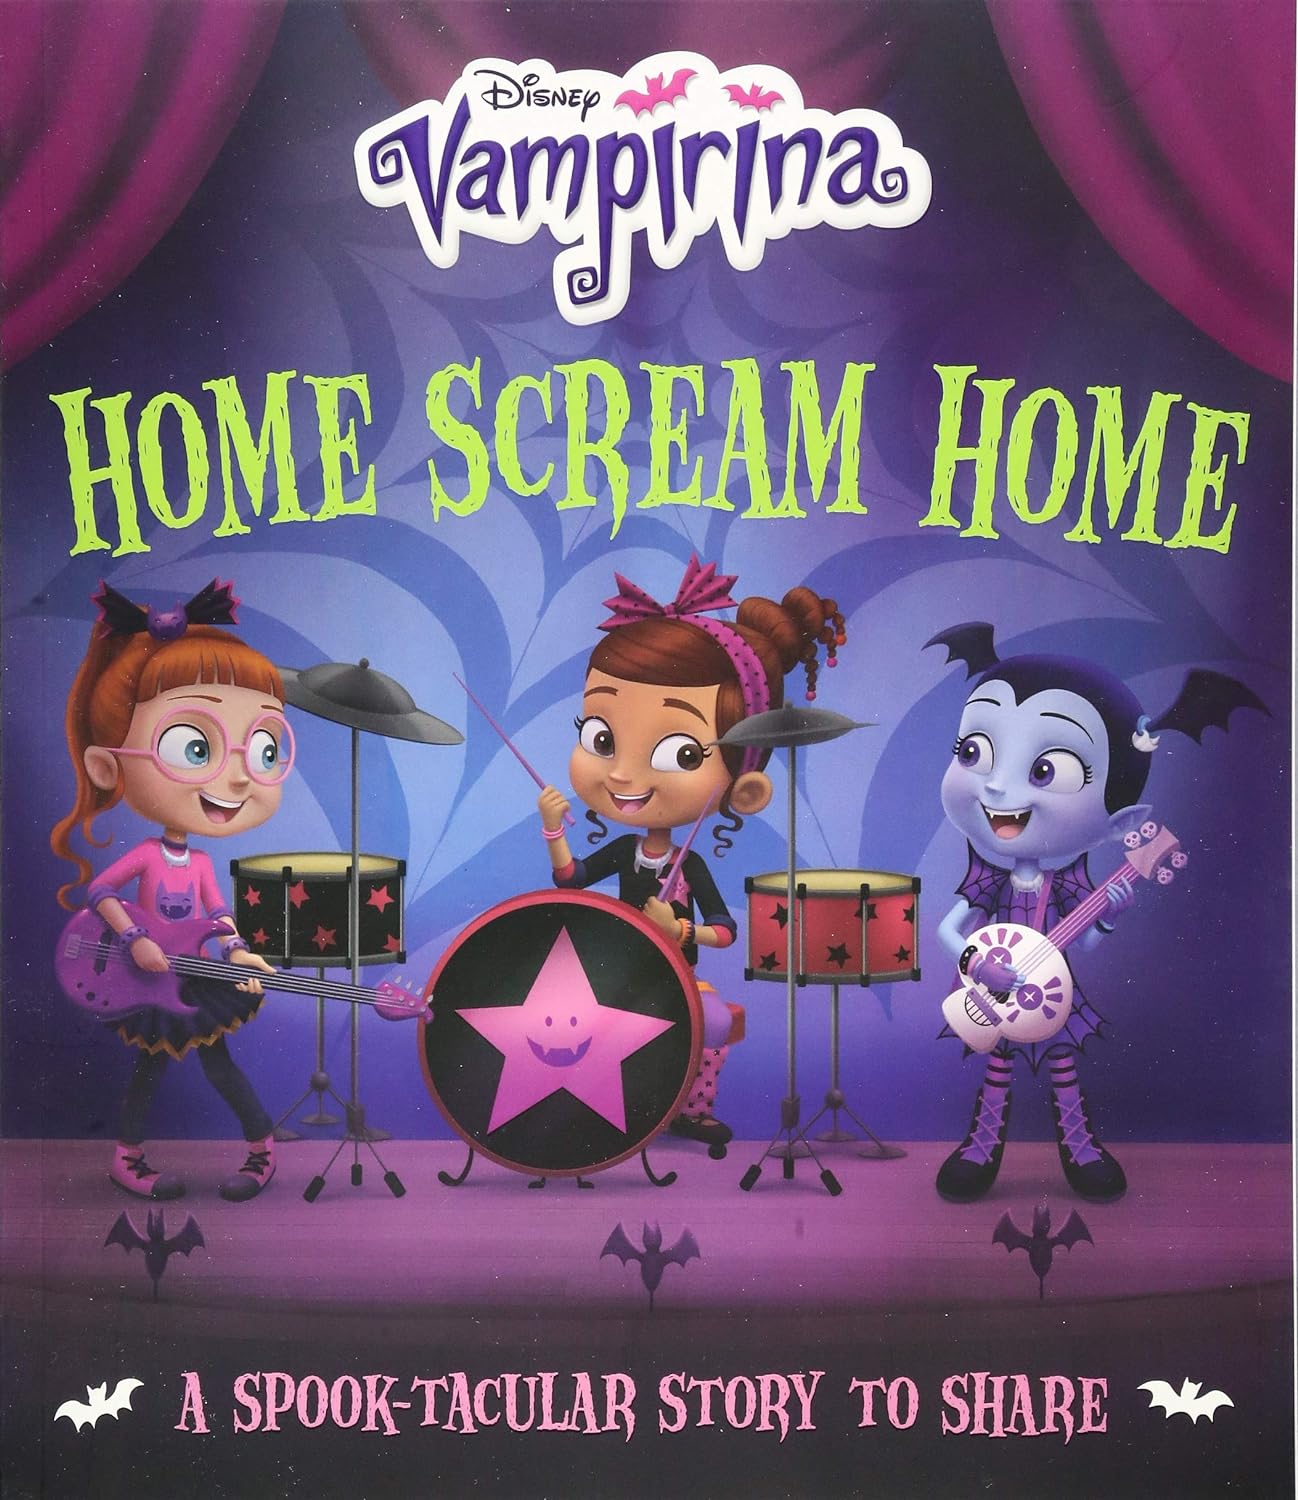 Vampirina: Home Scream Home